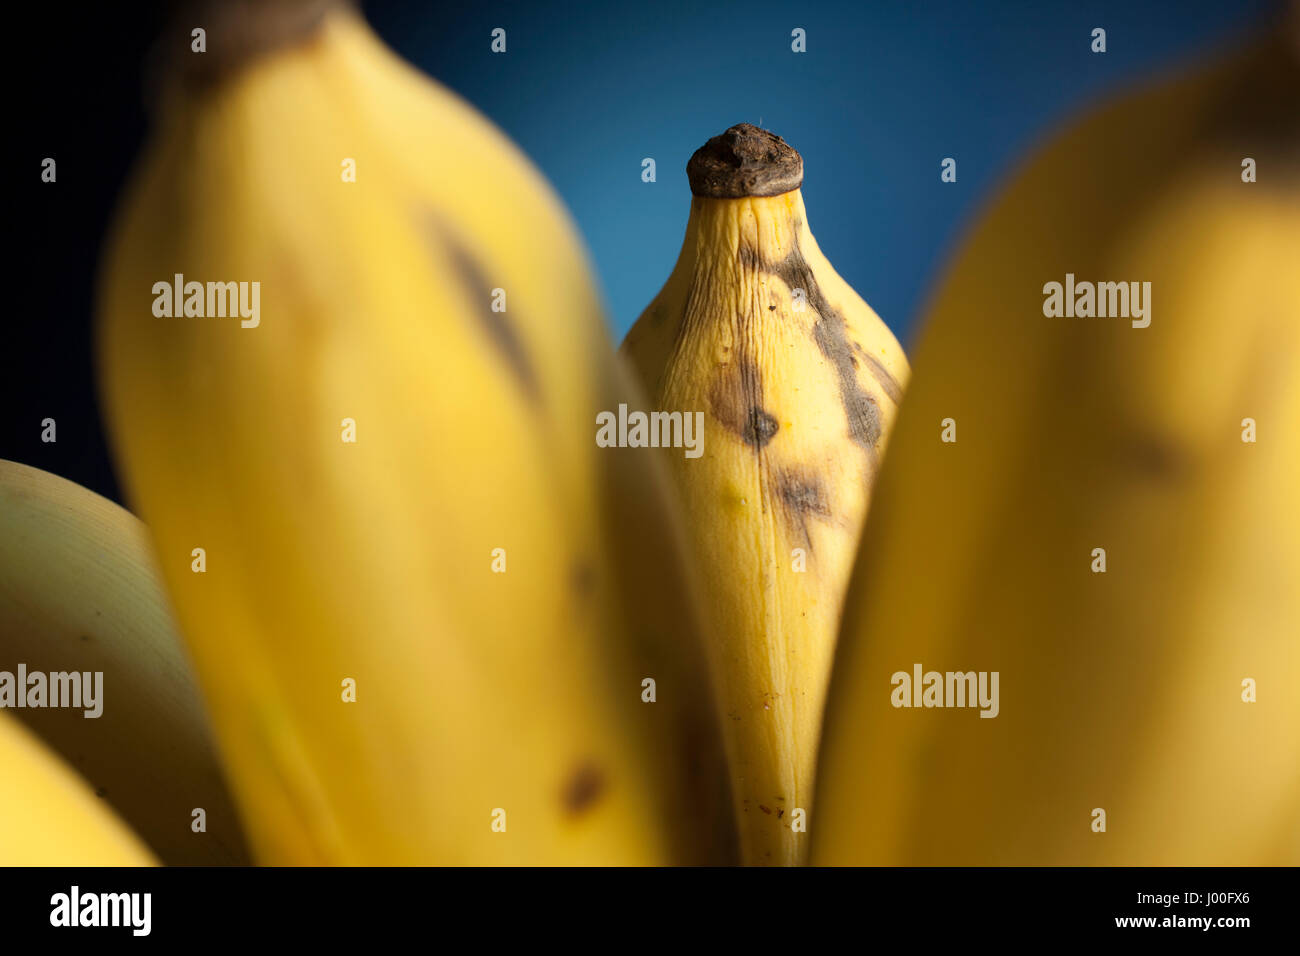 Primo piano dettaglio di un maturo banana tailandese in un mazzo con sfondo blu Foto Stock